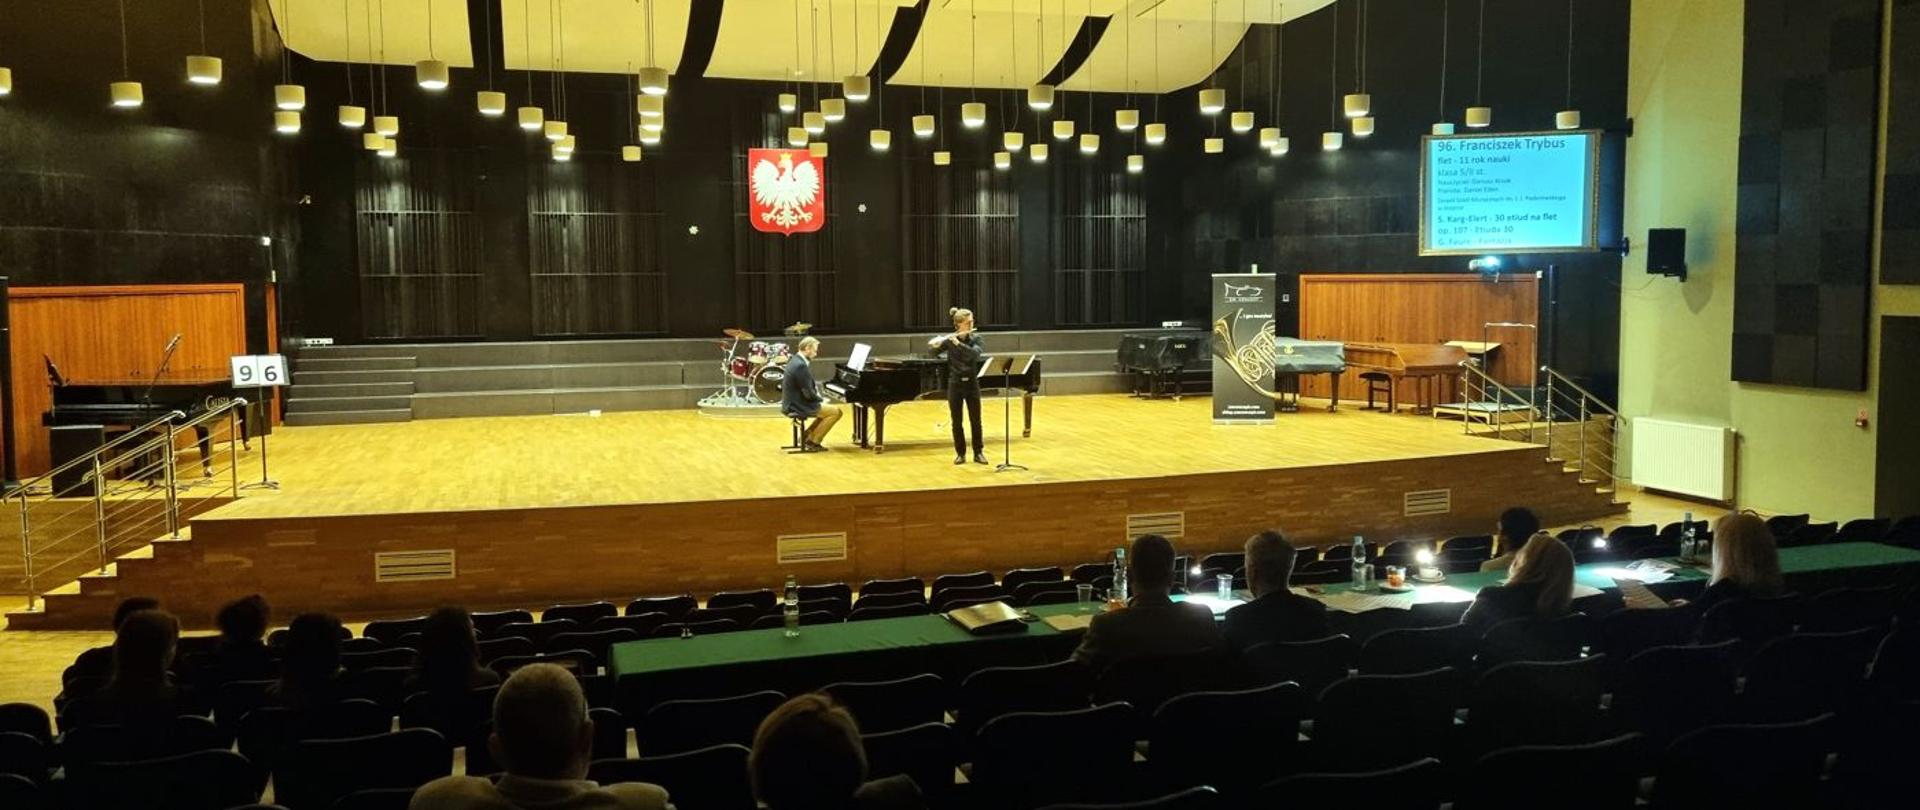 Postaci flecisty Franciszka Trybusa i pianisty Daniela Eibina na środku dużej sceny. Na pierwszym planie komisja konkursowa siedząca na widowni